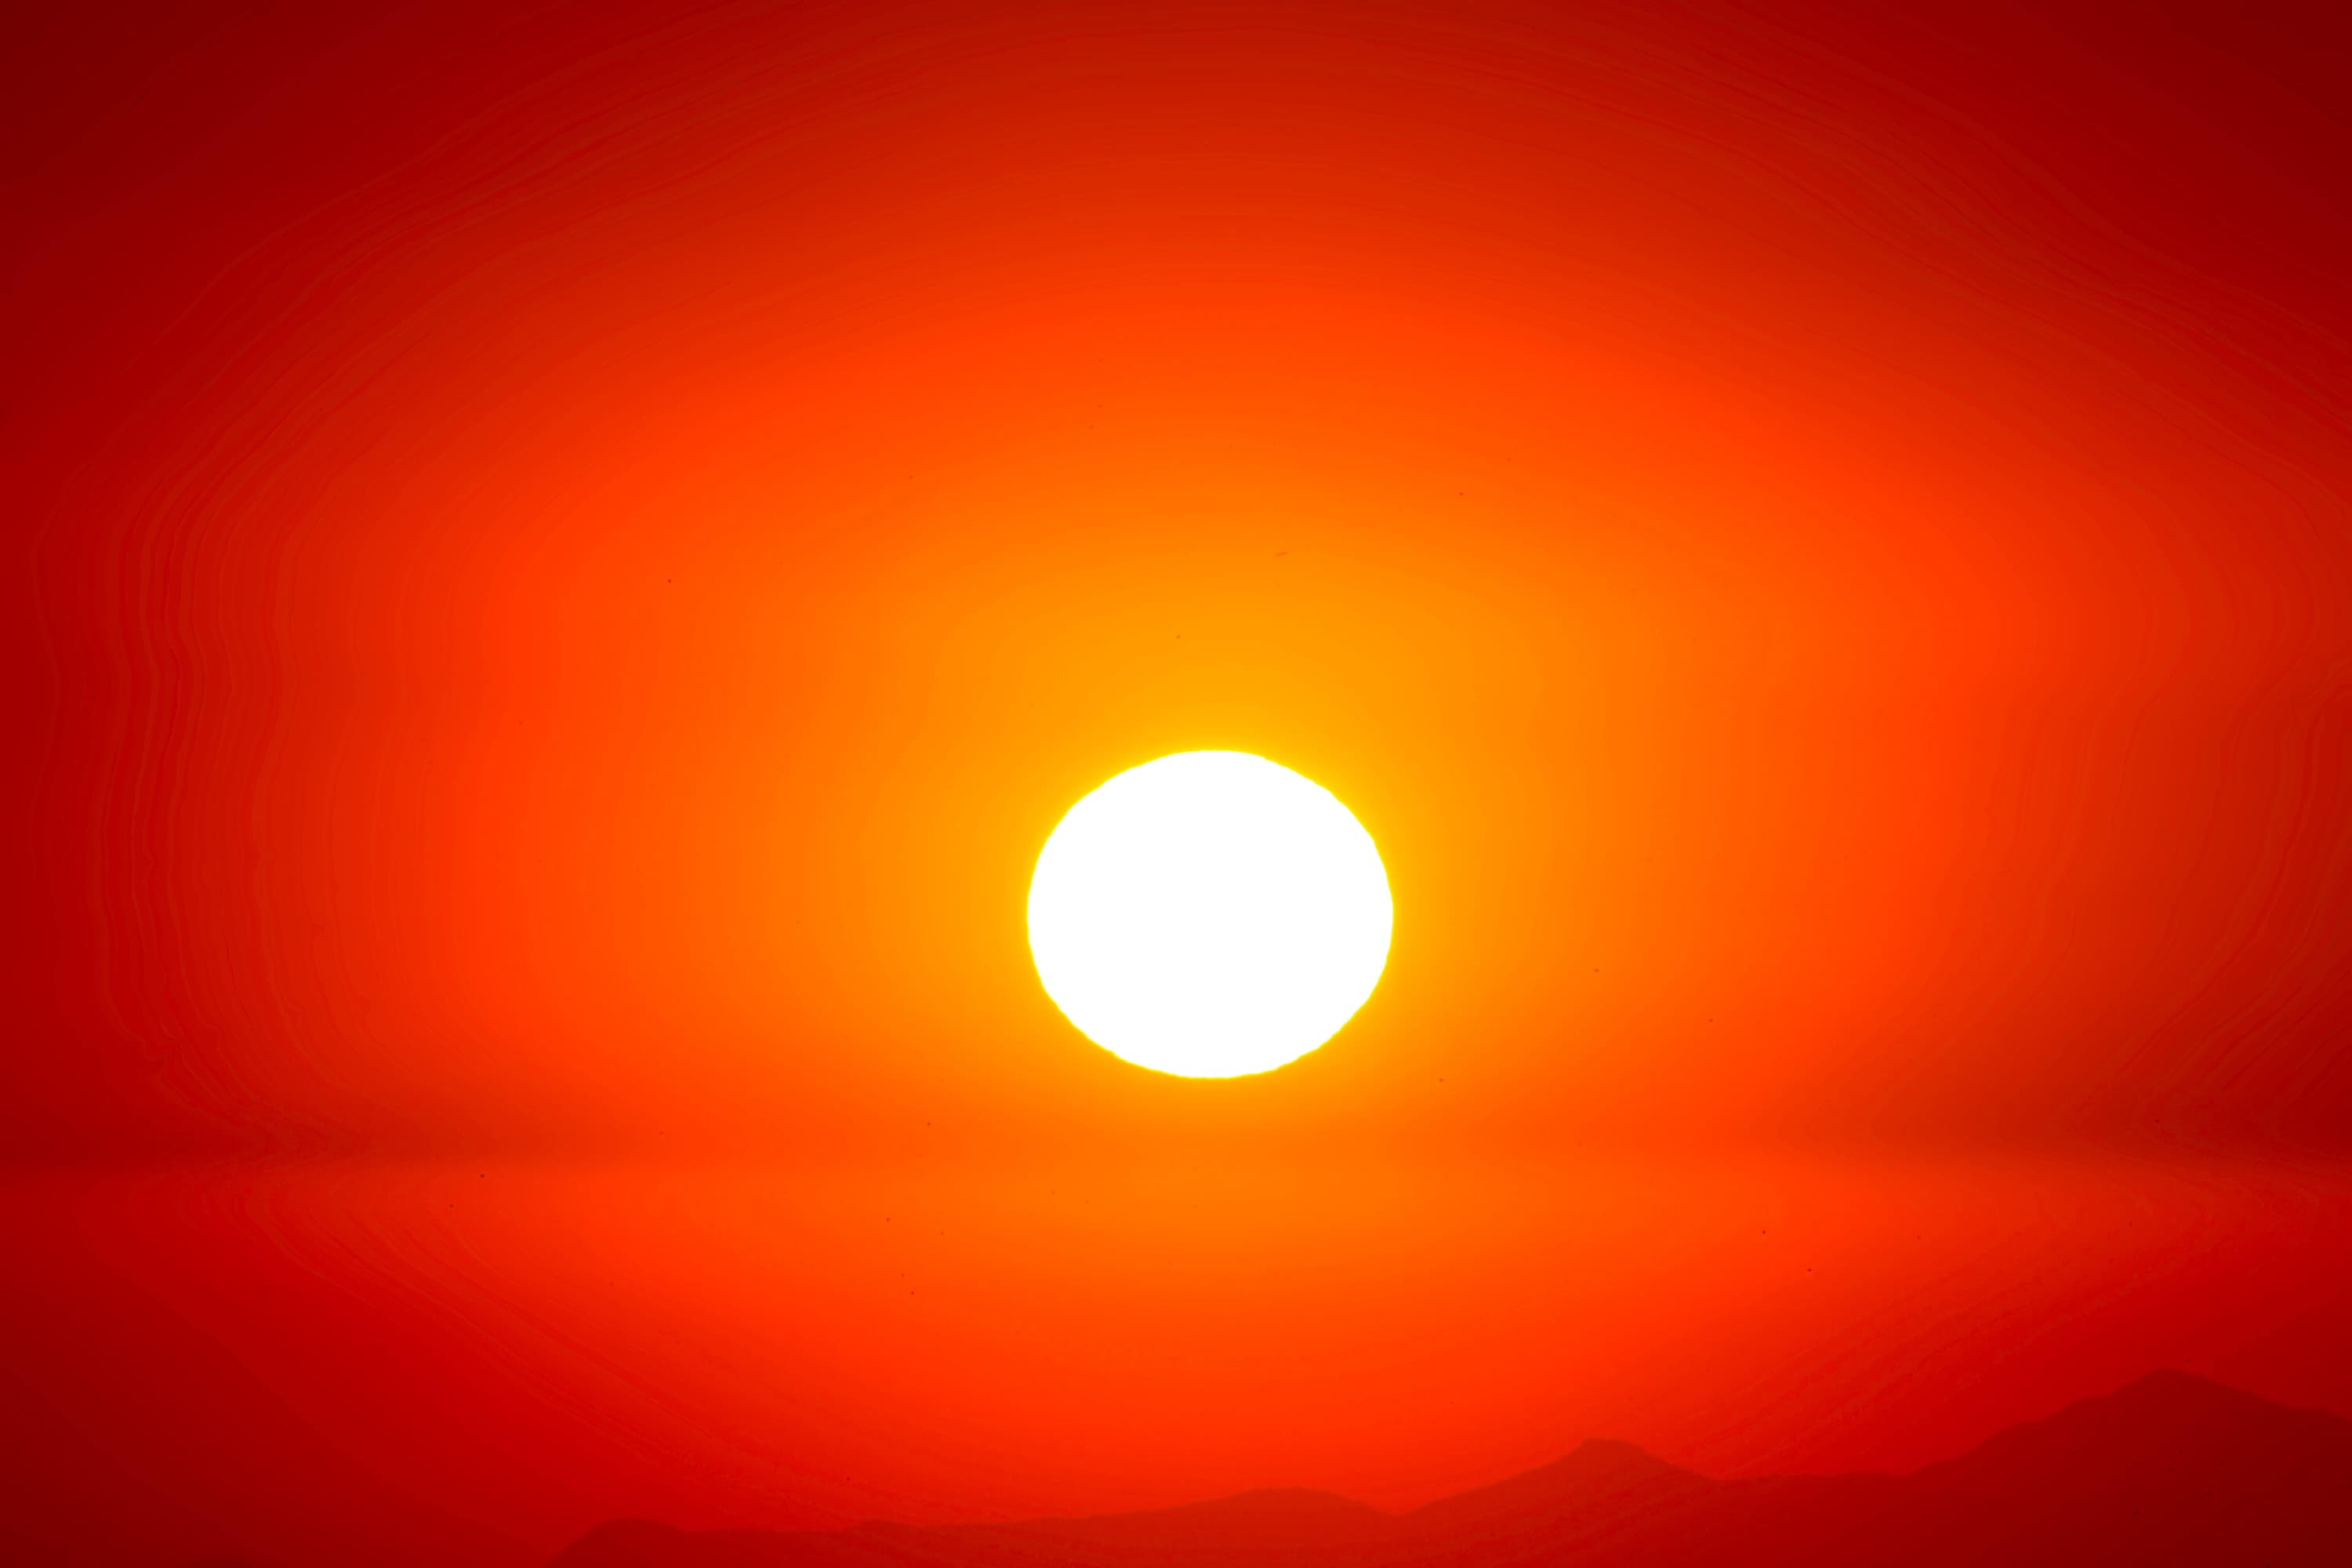 Luis graterol u AR Ov Yw9 W Ds unsplash heat wave temperatures sun